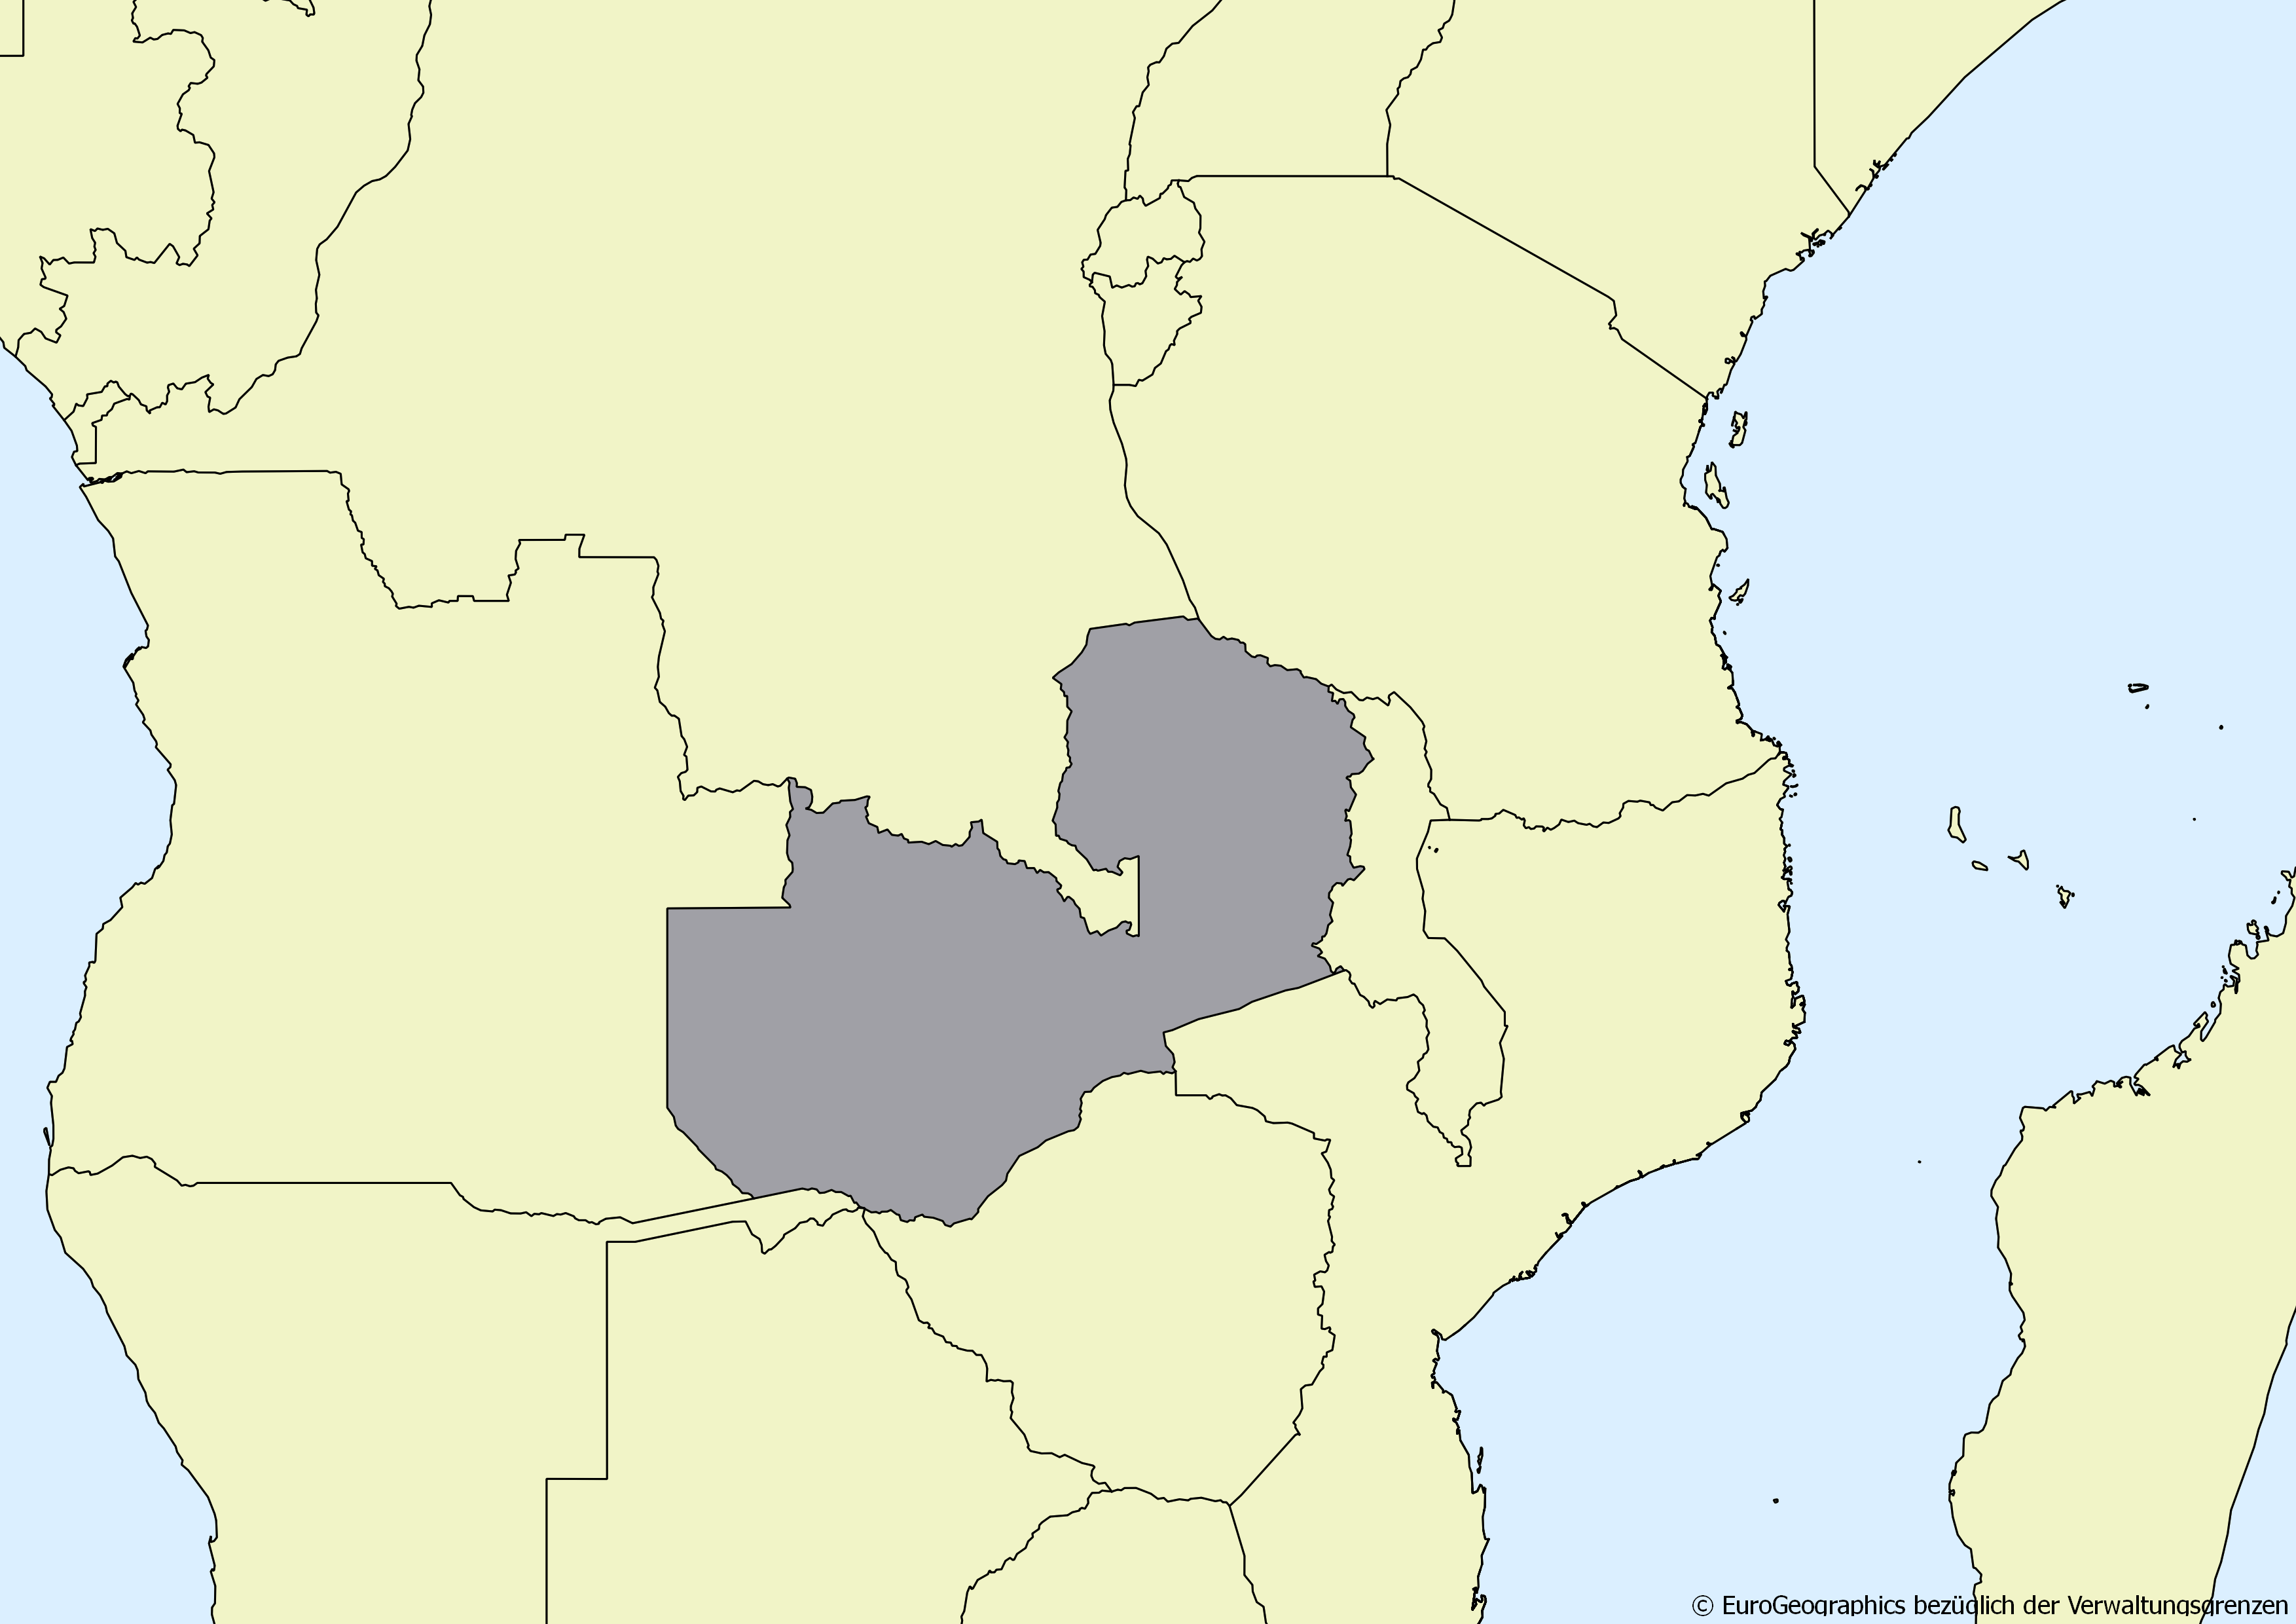 Ausschnitt einer Karte des afrikanischen Kontinents mit Ländergrenzen. Im Zentrum steht Sambia grau hervorgehoben